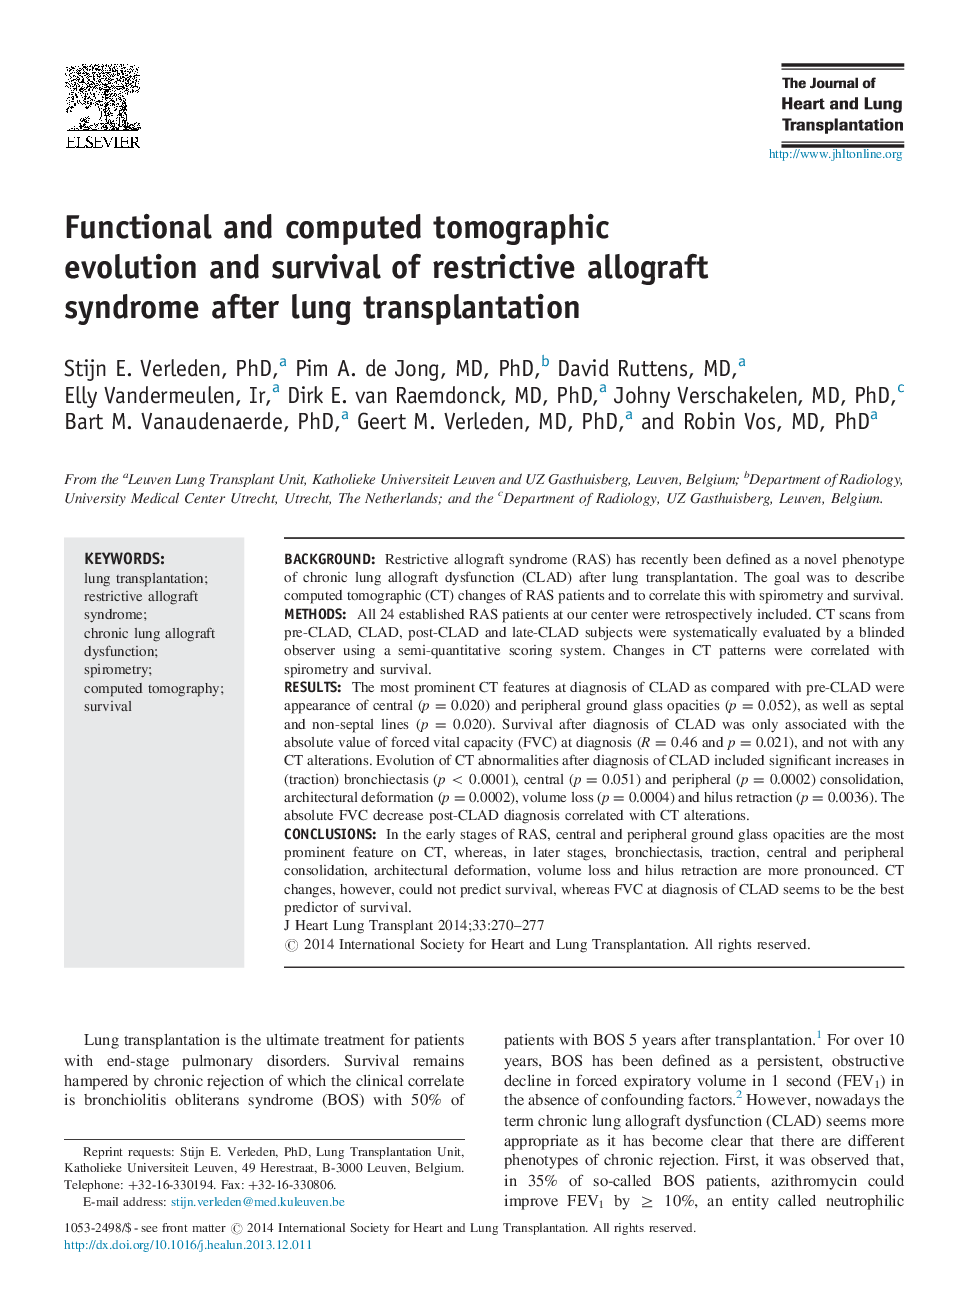 تکامل توموگرافی عملکردی و محاسبه شده و بقای سندرم آلوگرافت محدود پس از پیوند ریه 